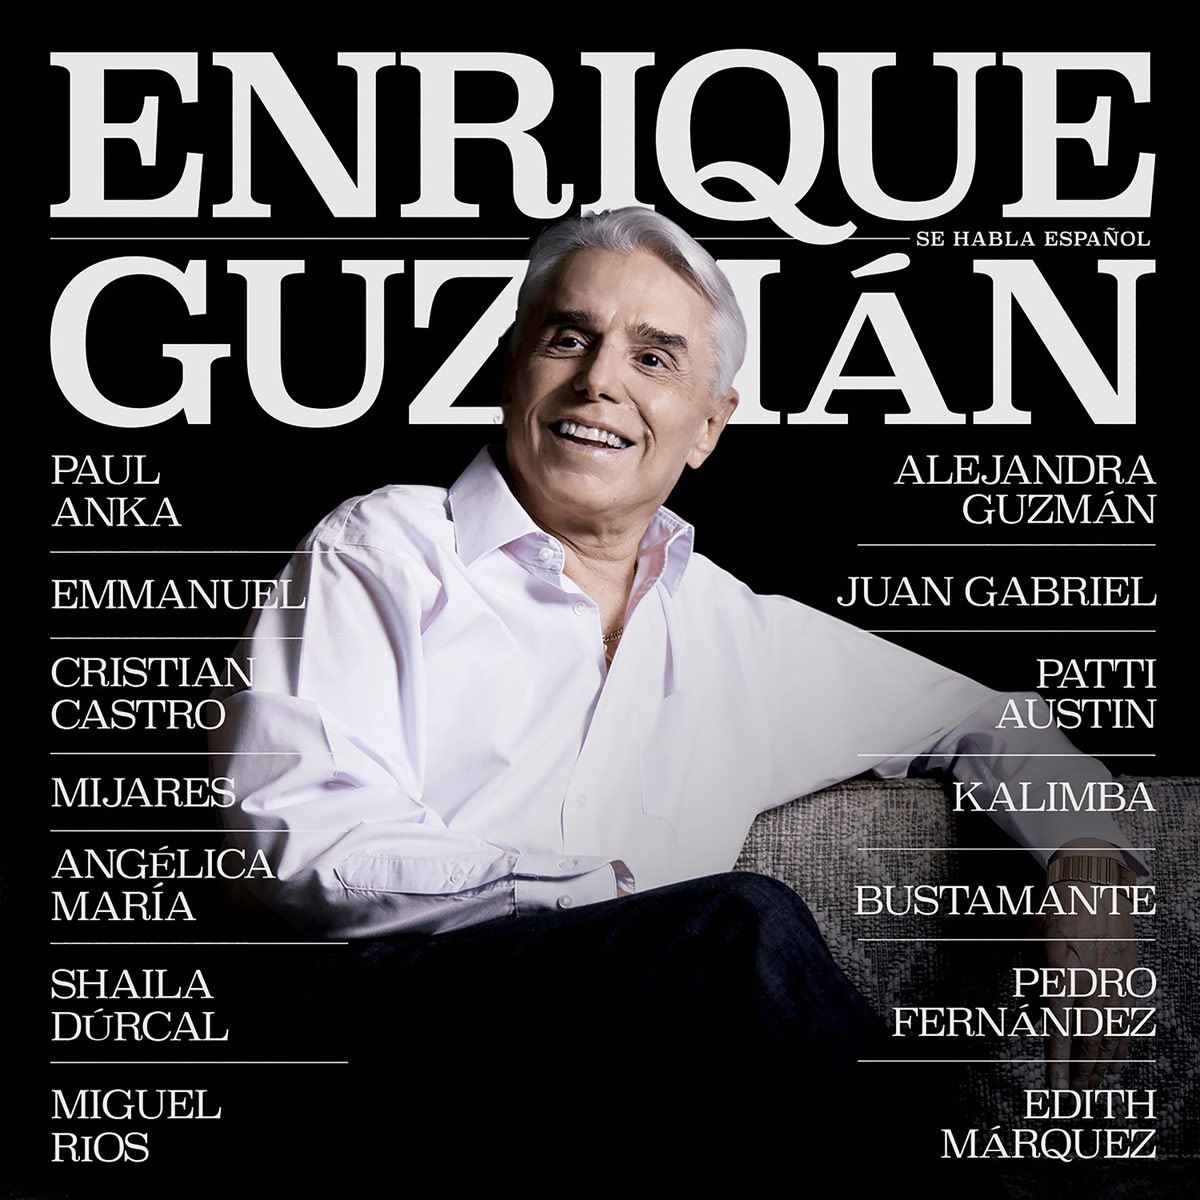 CD + DVD Enrique Guzmán - Se Habla Español